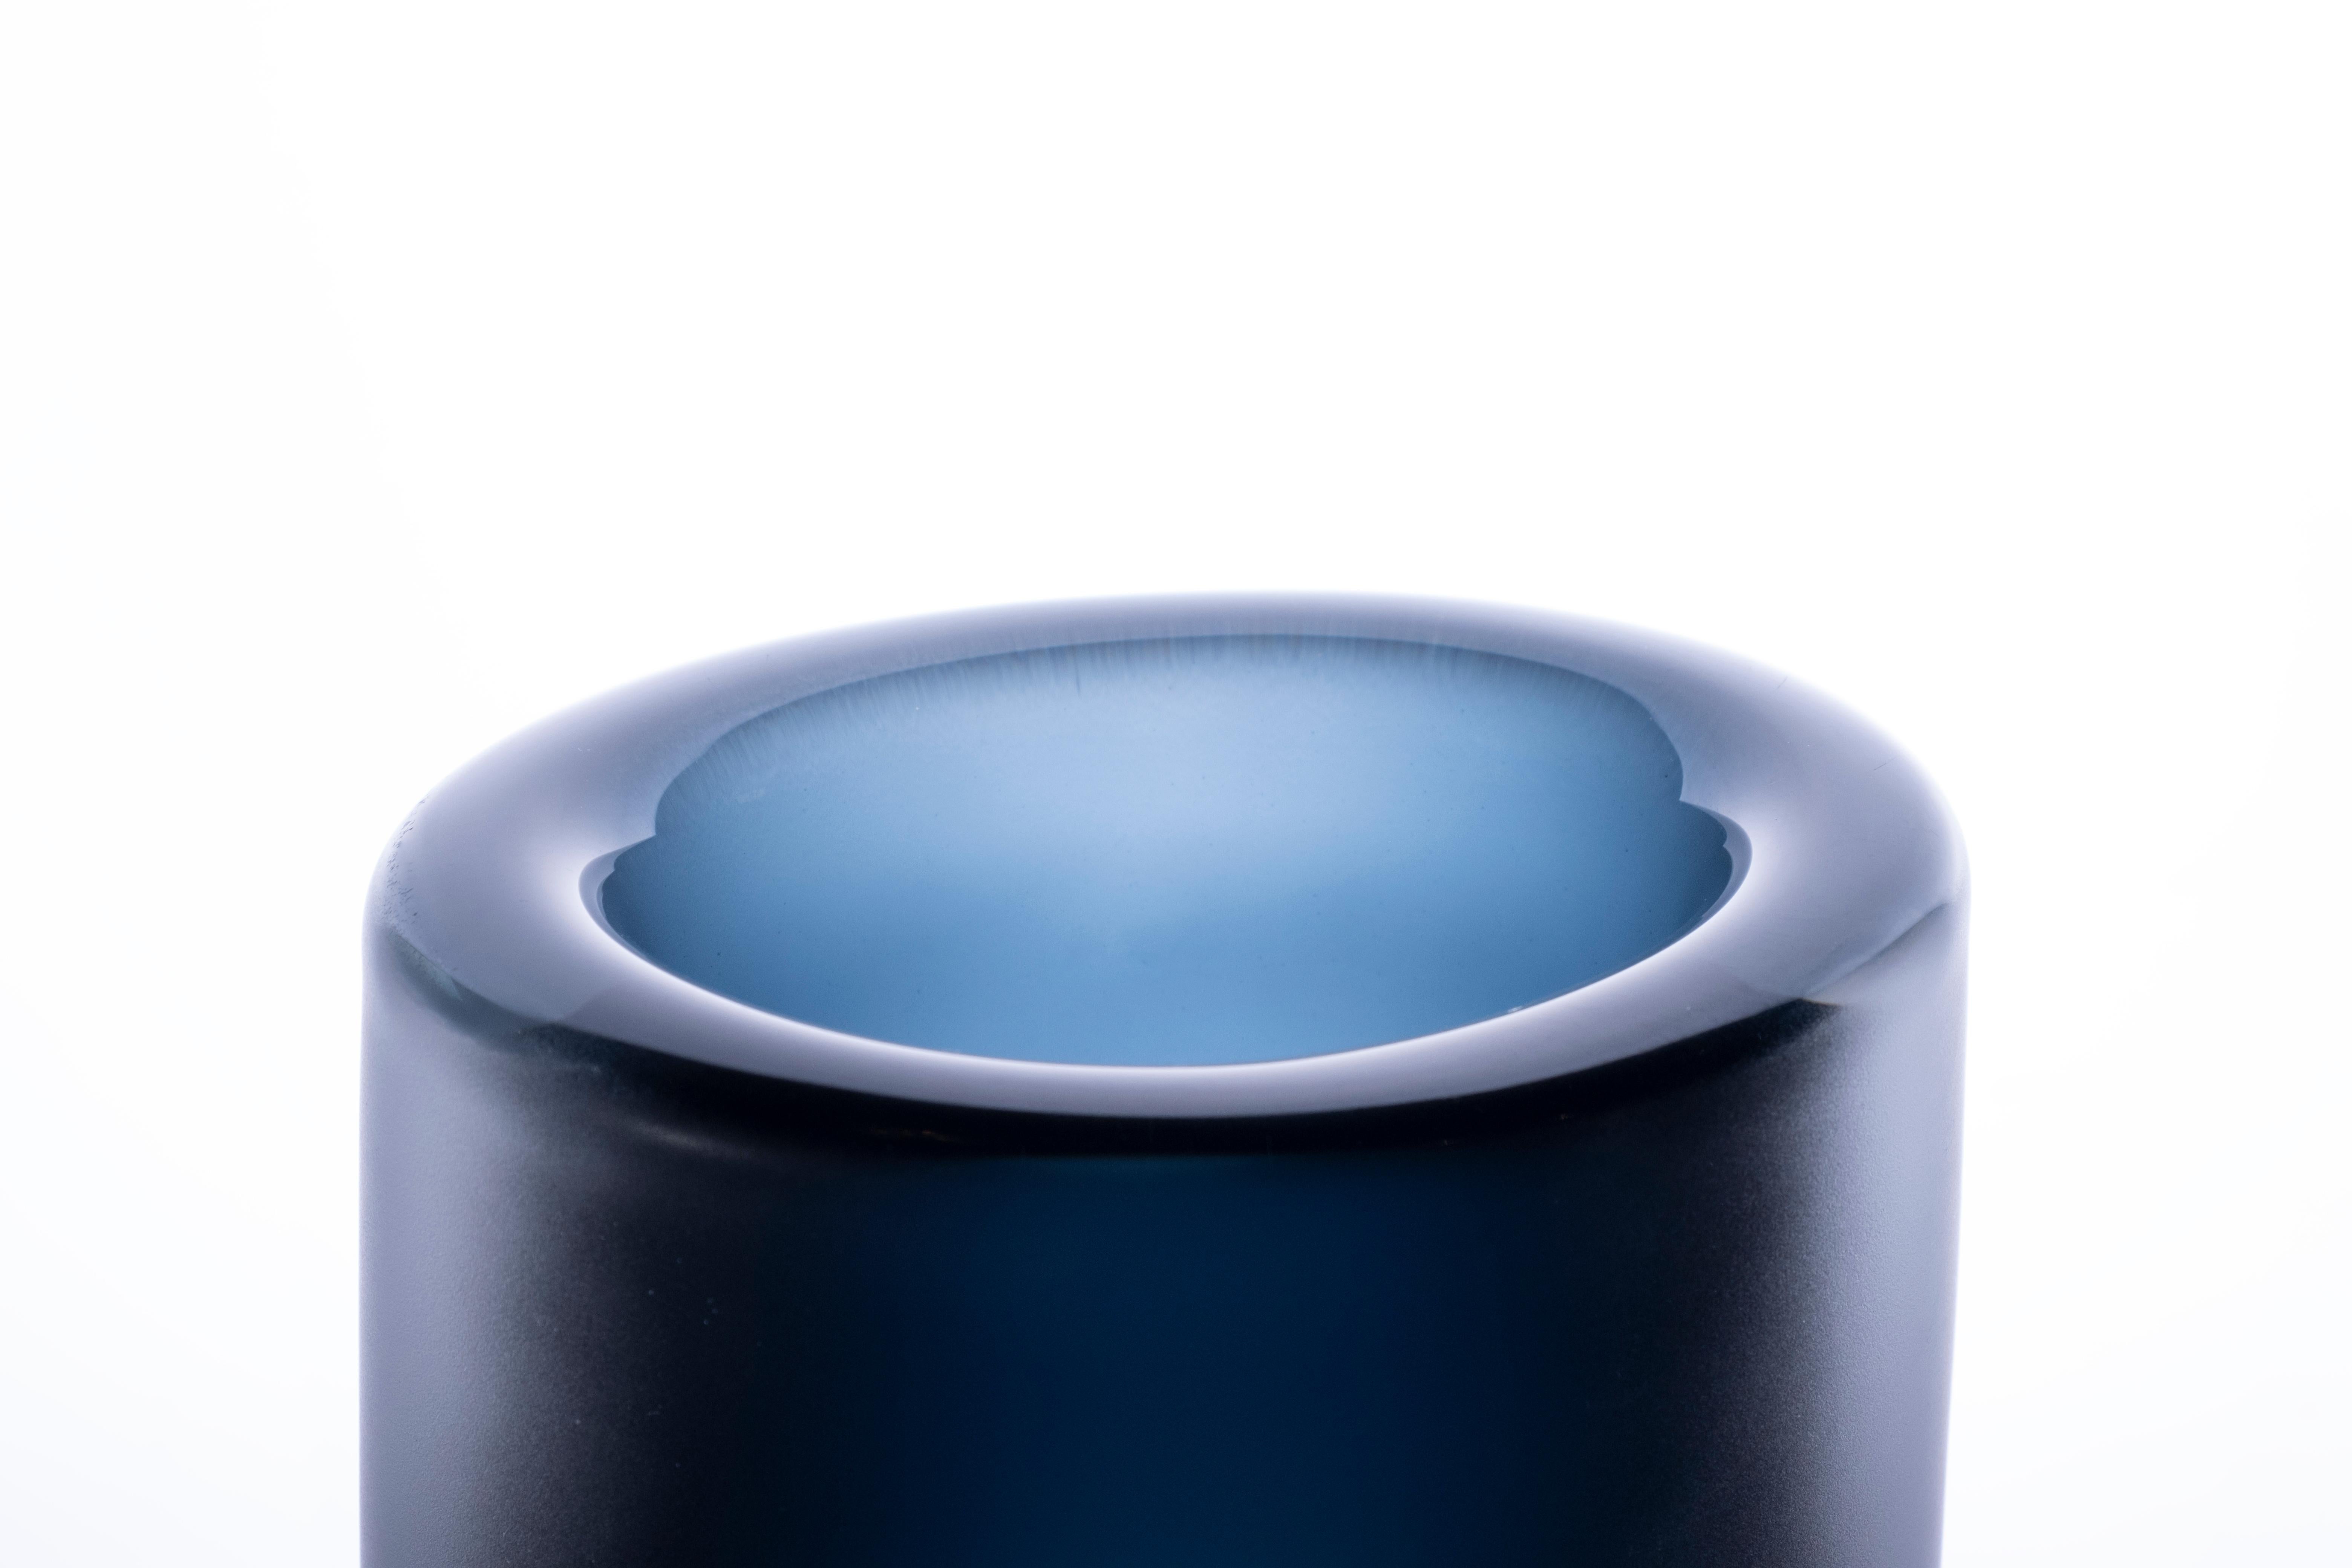 Cilindro Large Glossy - Transparent Vase, Murano glass, by Federico Peri, 21st century.
Cilindro est un vase de la collection Essentials conçue par Federico Peri pour Purho au printemps 2021.
Créé à partir du point de départ d'un cylindre de verre